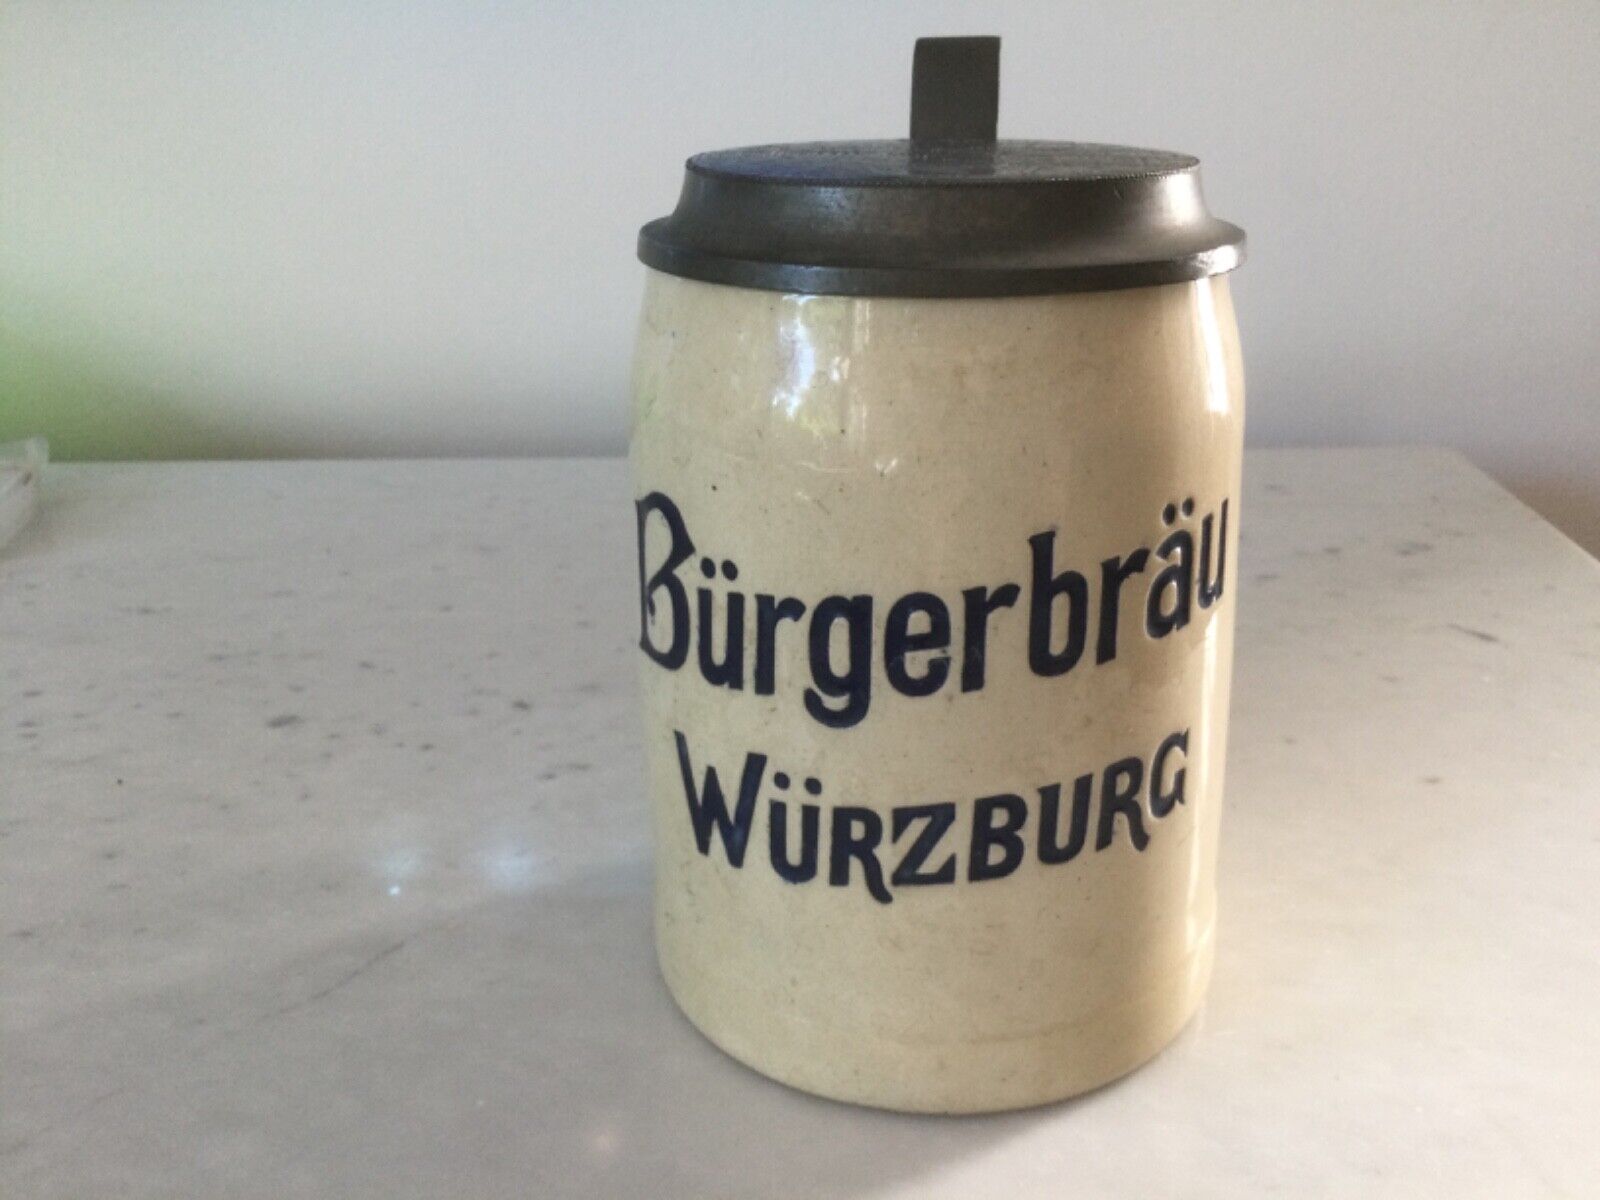 German Burgerbrau, Wurzburg Brewery Beer Stein